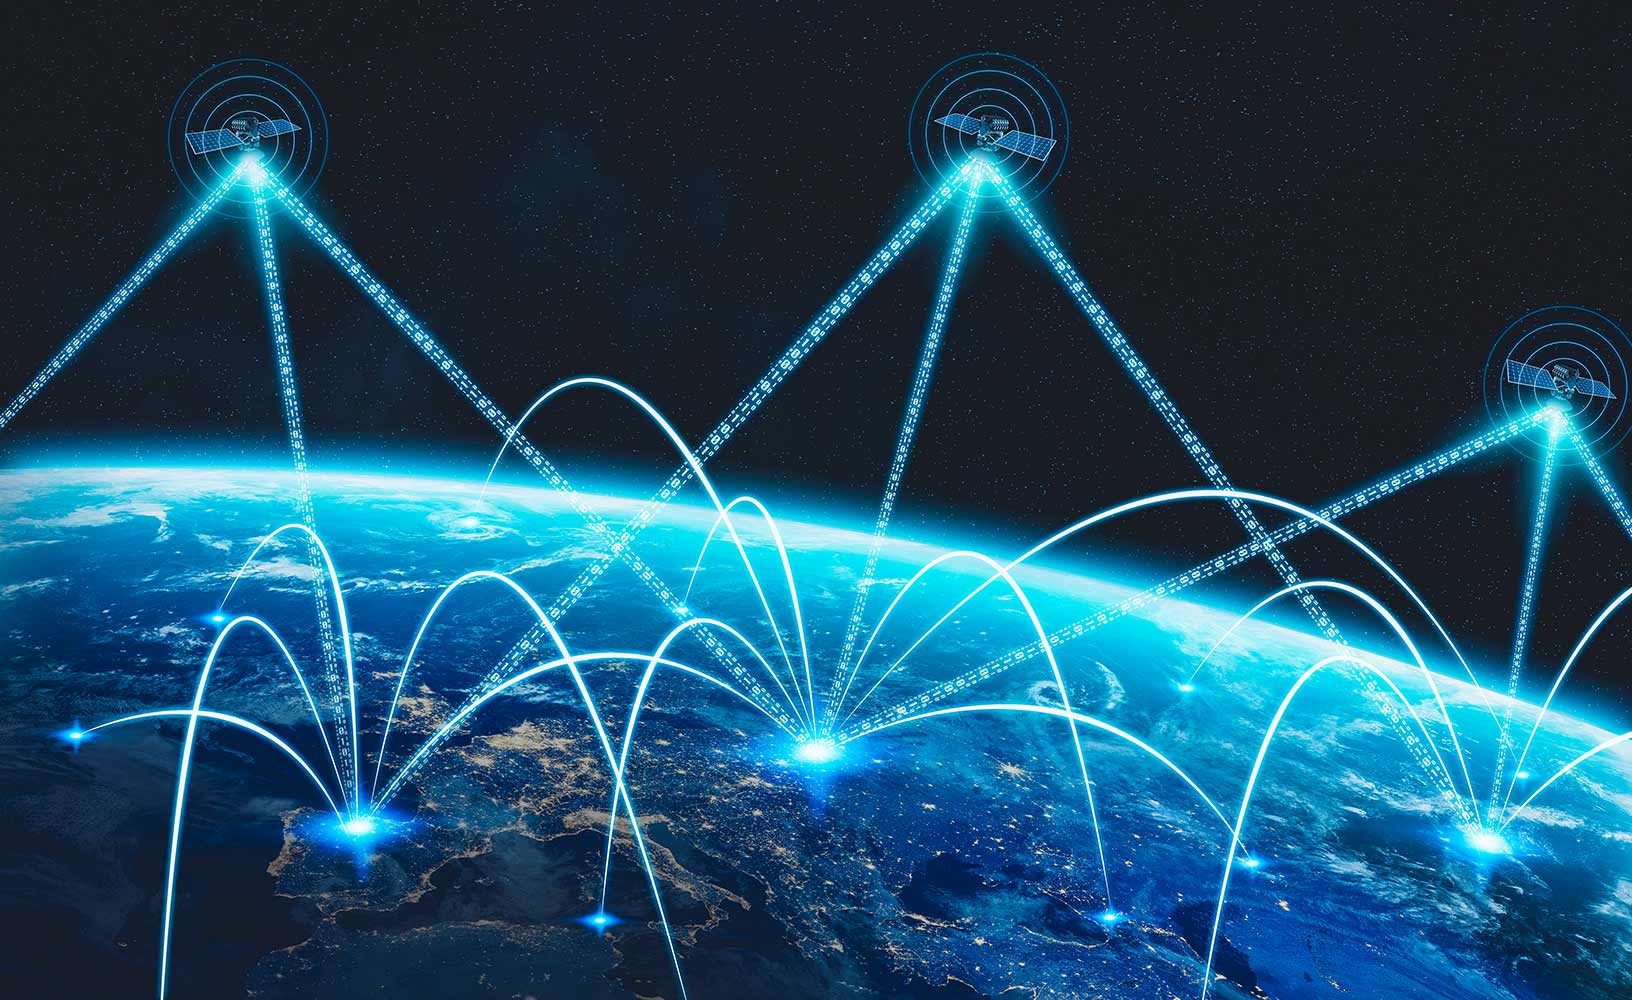 Eine Konstellation von GNSS-Satelliten, die ihre Signale zur Erde senden, um die Positionierung, Navigation und Zeitmessung weltweit zu berechnen.